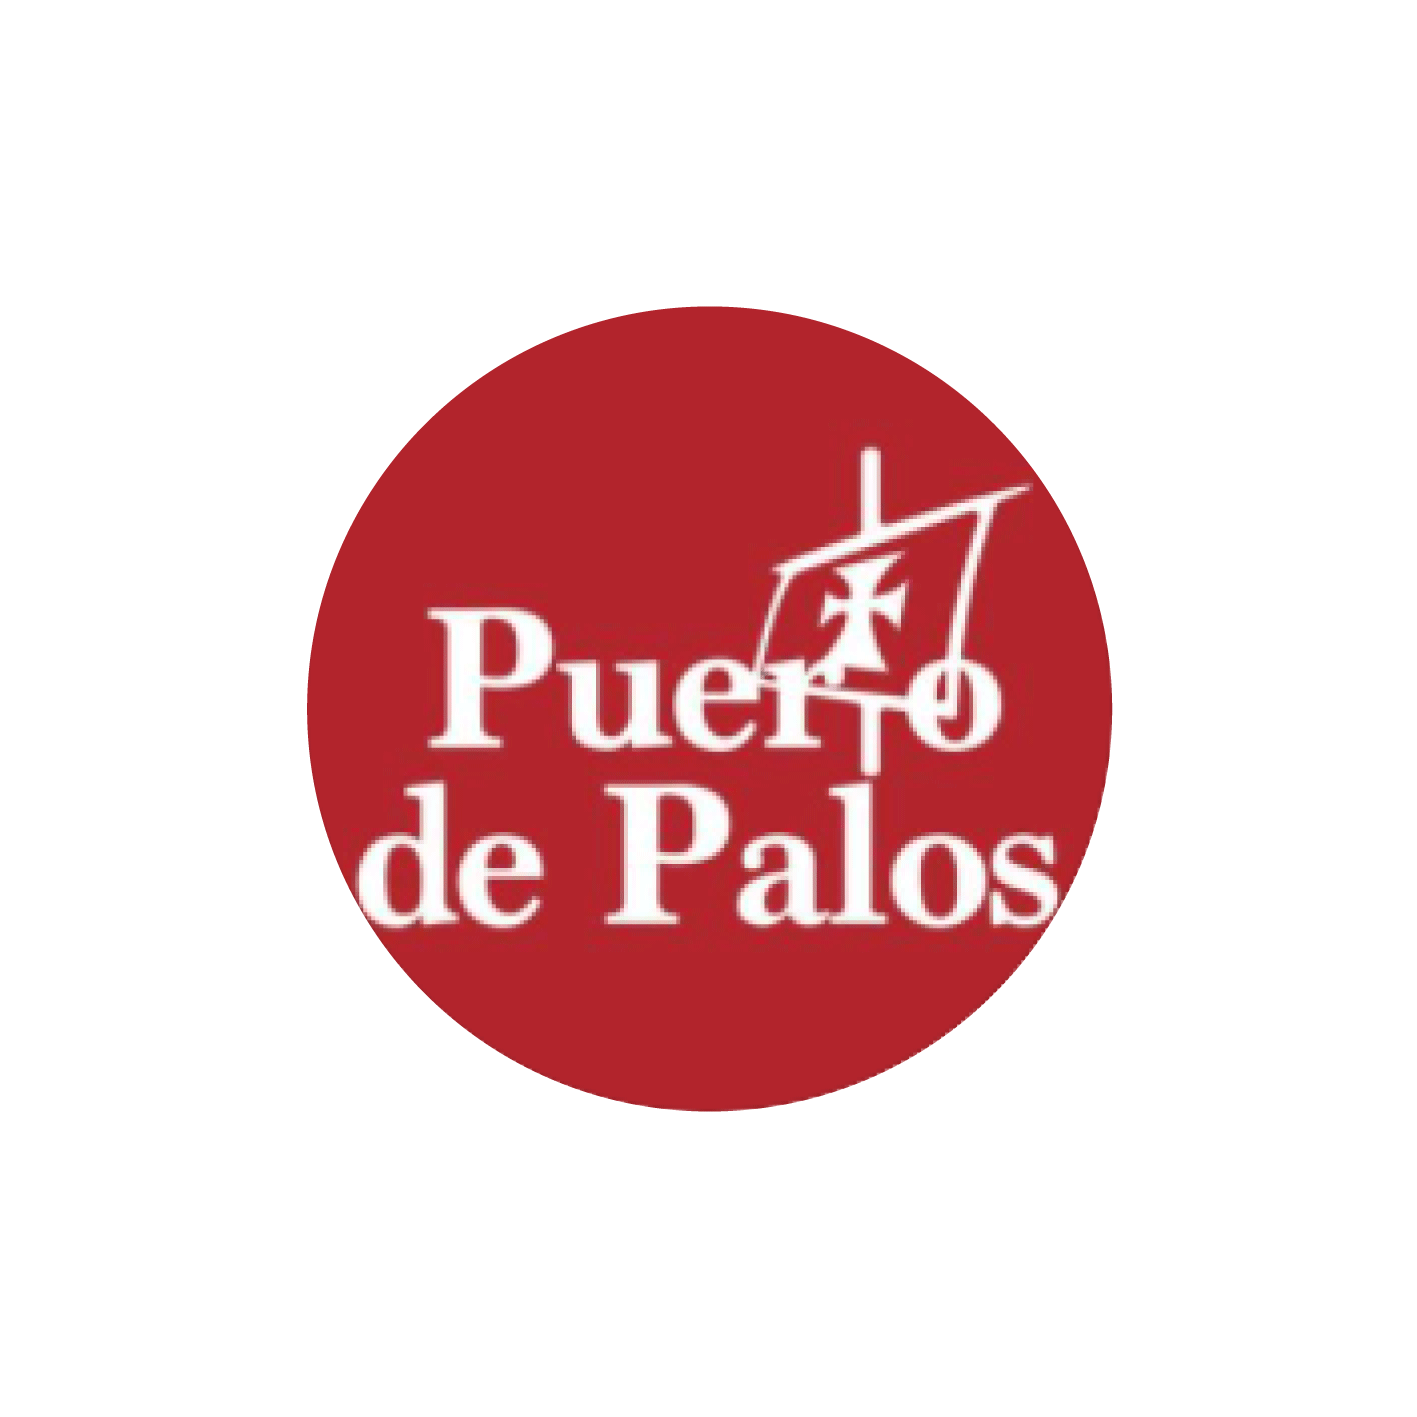 Puerto de Palos